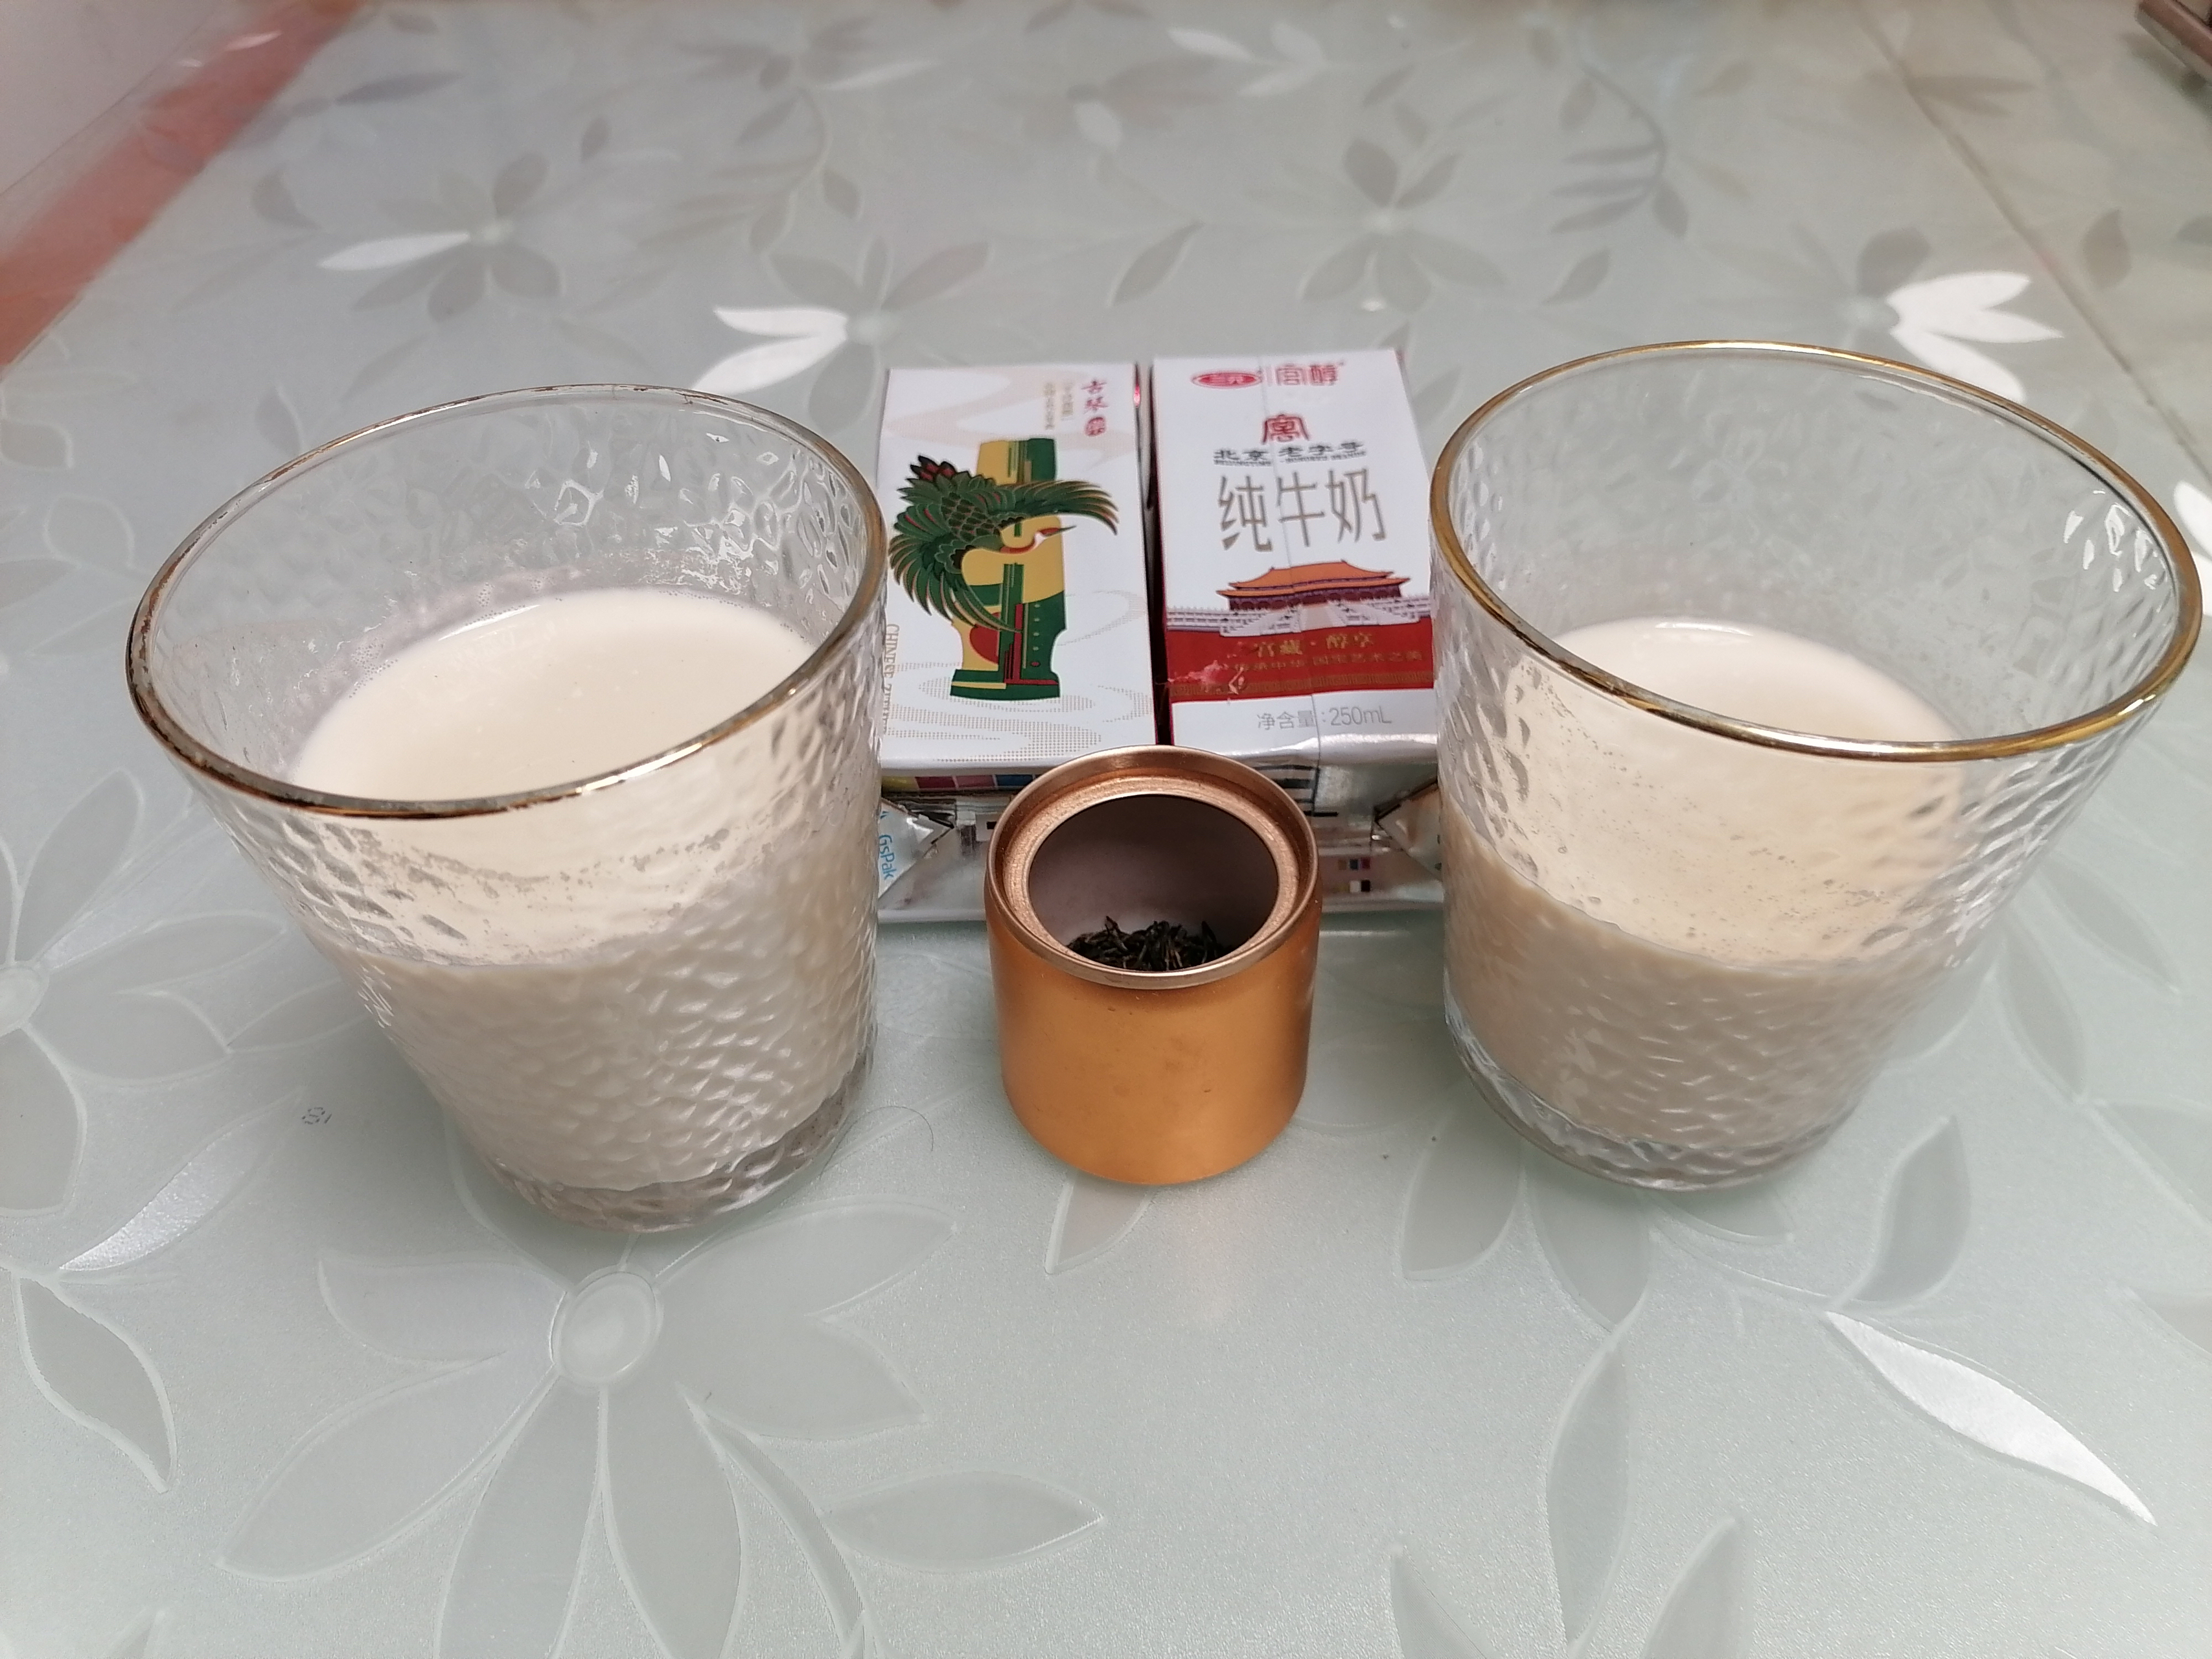 冬日第一杯自制奶茶，炒糖纯牛奶煮红茶